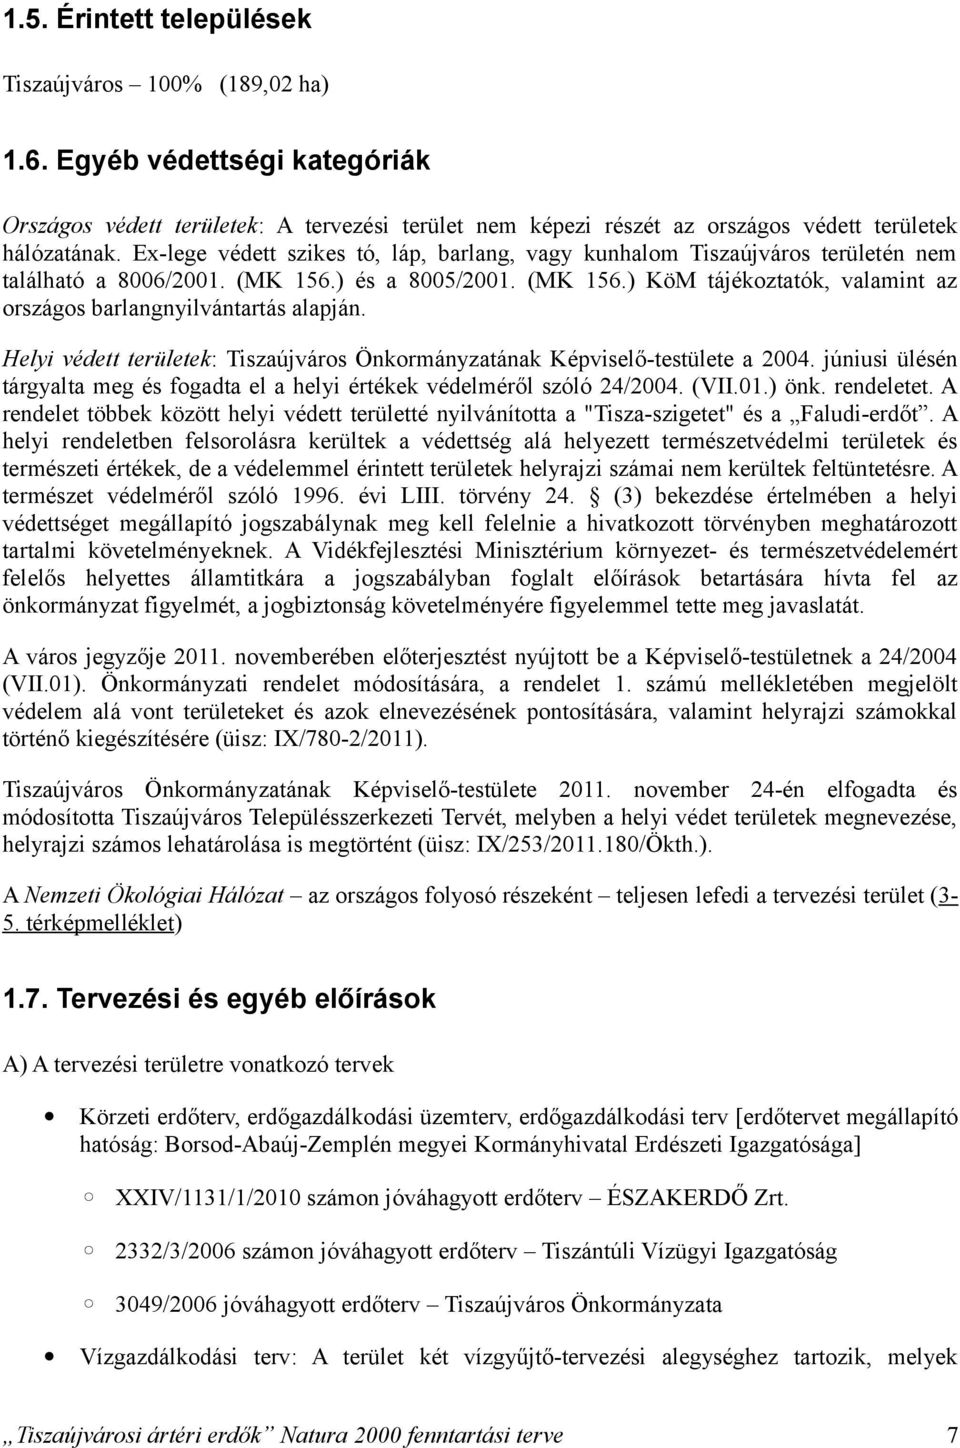 Helyi védett területek: Tiszaújváros Önkormányzatának Képviselőtestülete a 2004. júniusi ülésén tárgyalta meg és fogadta el a helyi értékek védelméről szóló 24/2004. (VII.01.) önk. rendeletet.